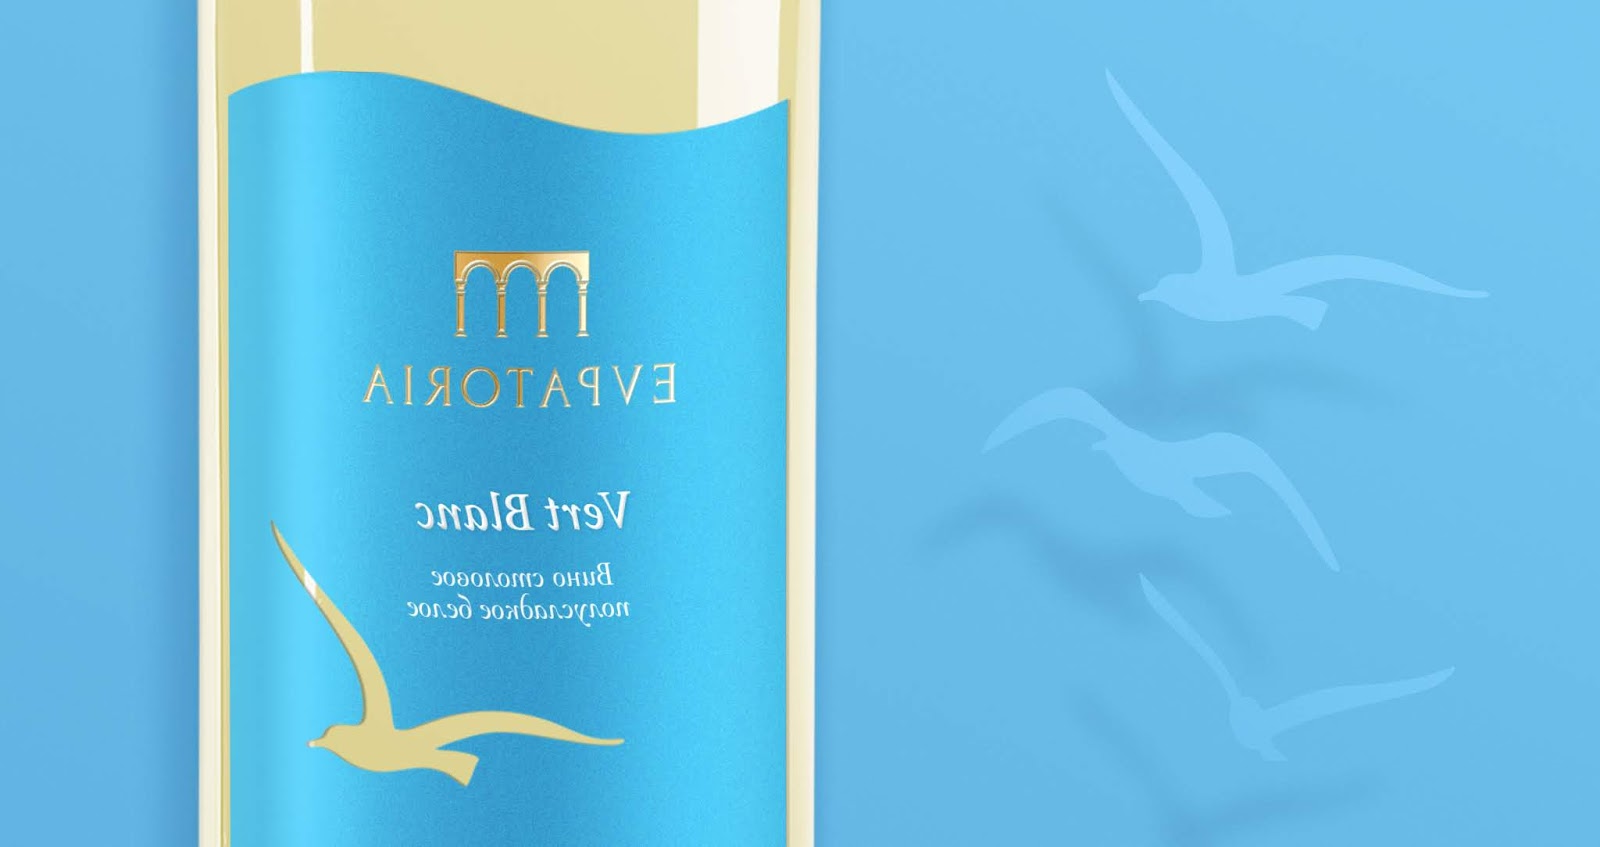 海洋主题葡萄酒西安欧亿体育‧（官方）平台网站
品牌包装设计